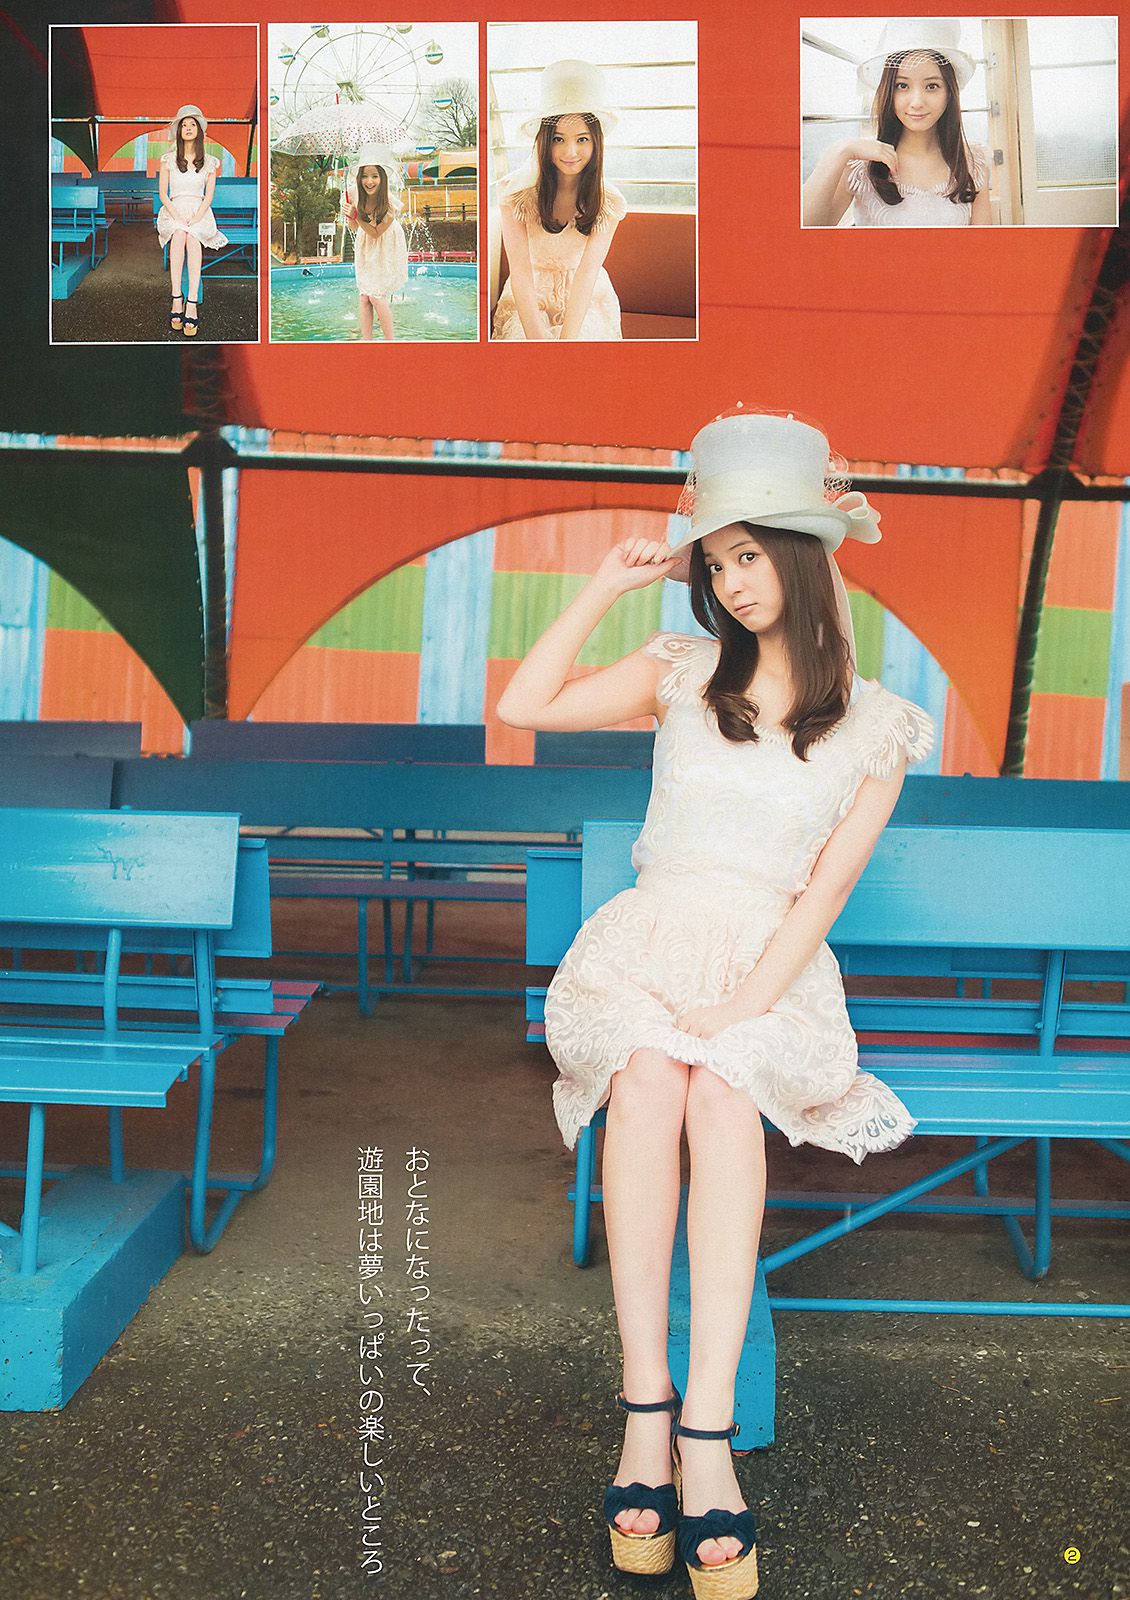 佐々木希 サキドルエースSURVIVAL Season2 [Weekly Young Jump] 2013年No.23 写真杂志